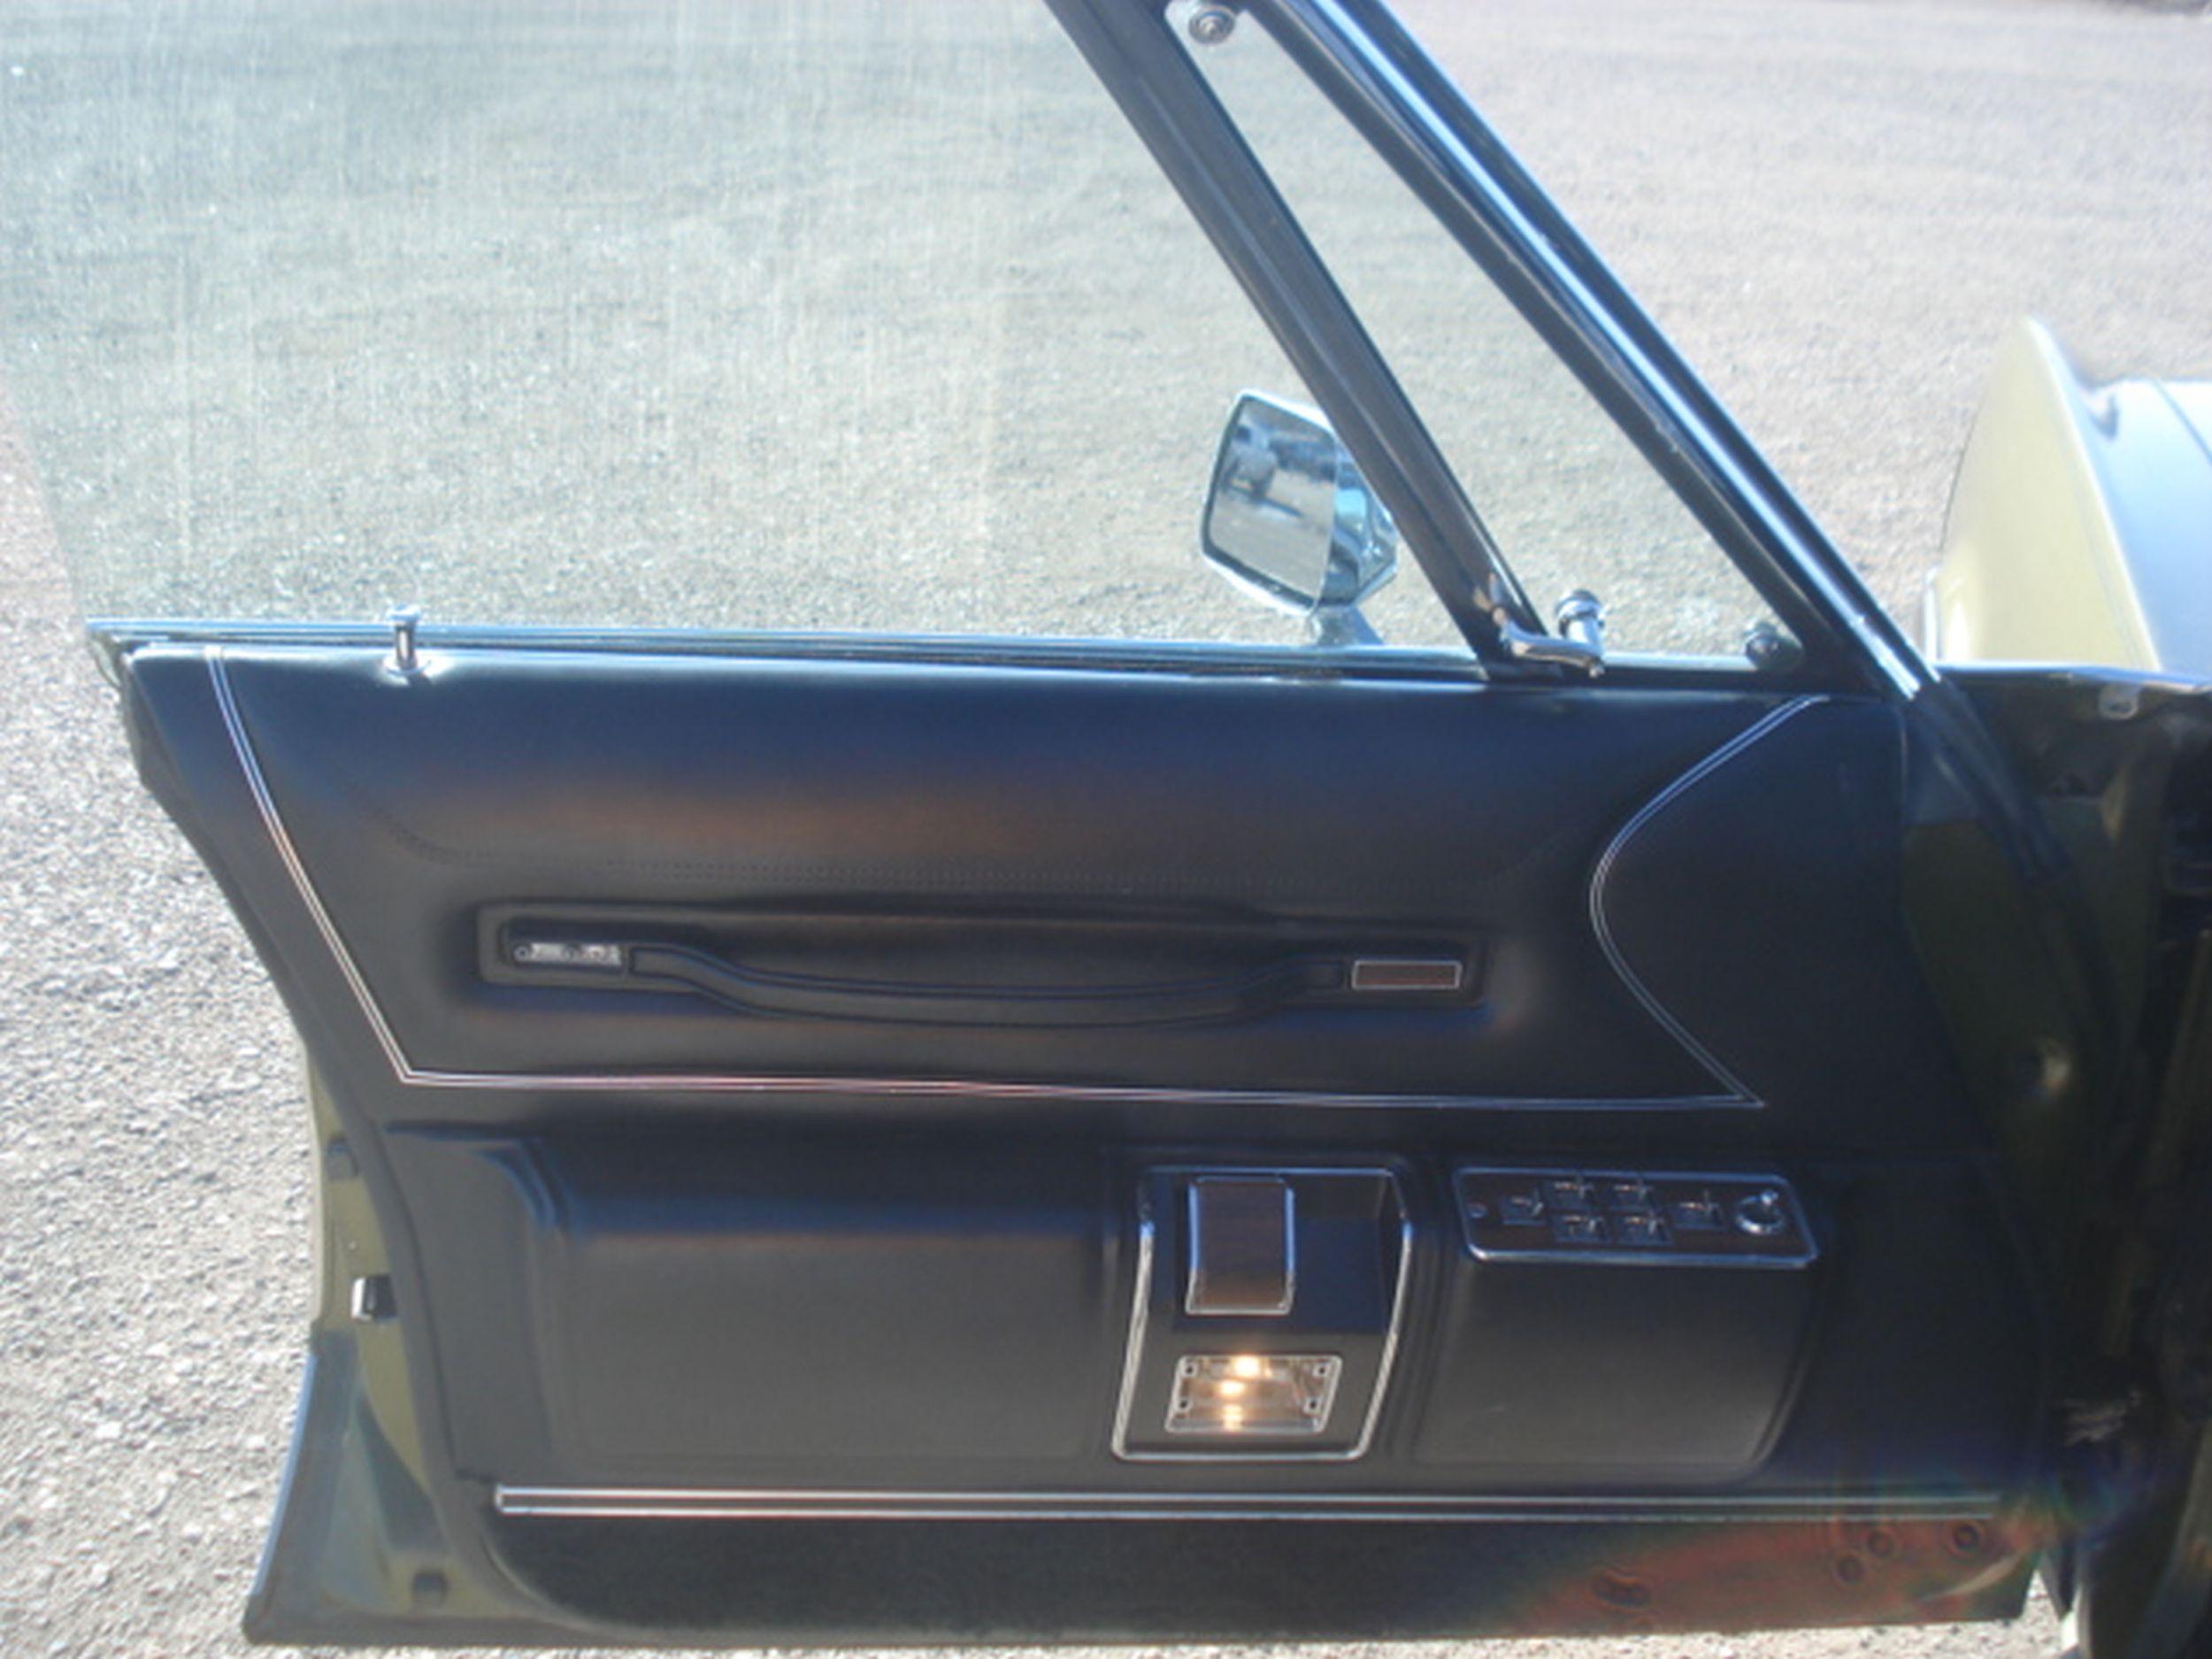 1974 Chrysler Imperial LeBaron 4dr HT